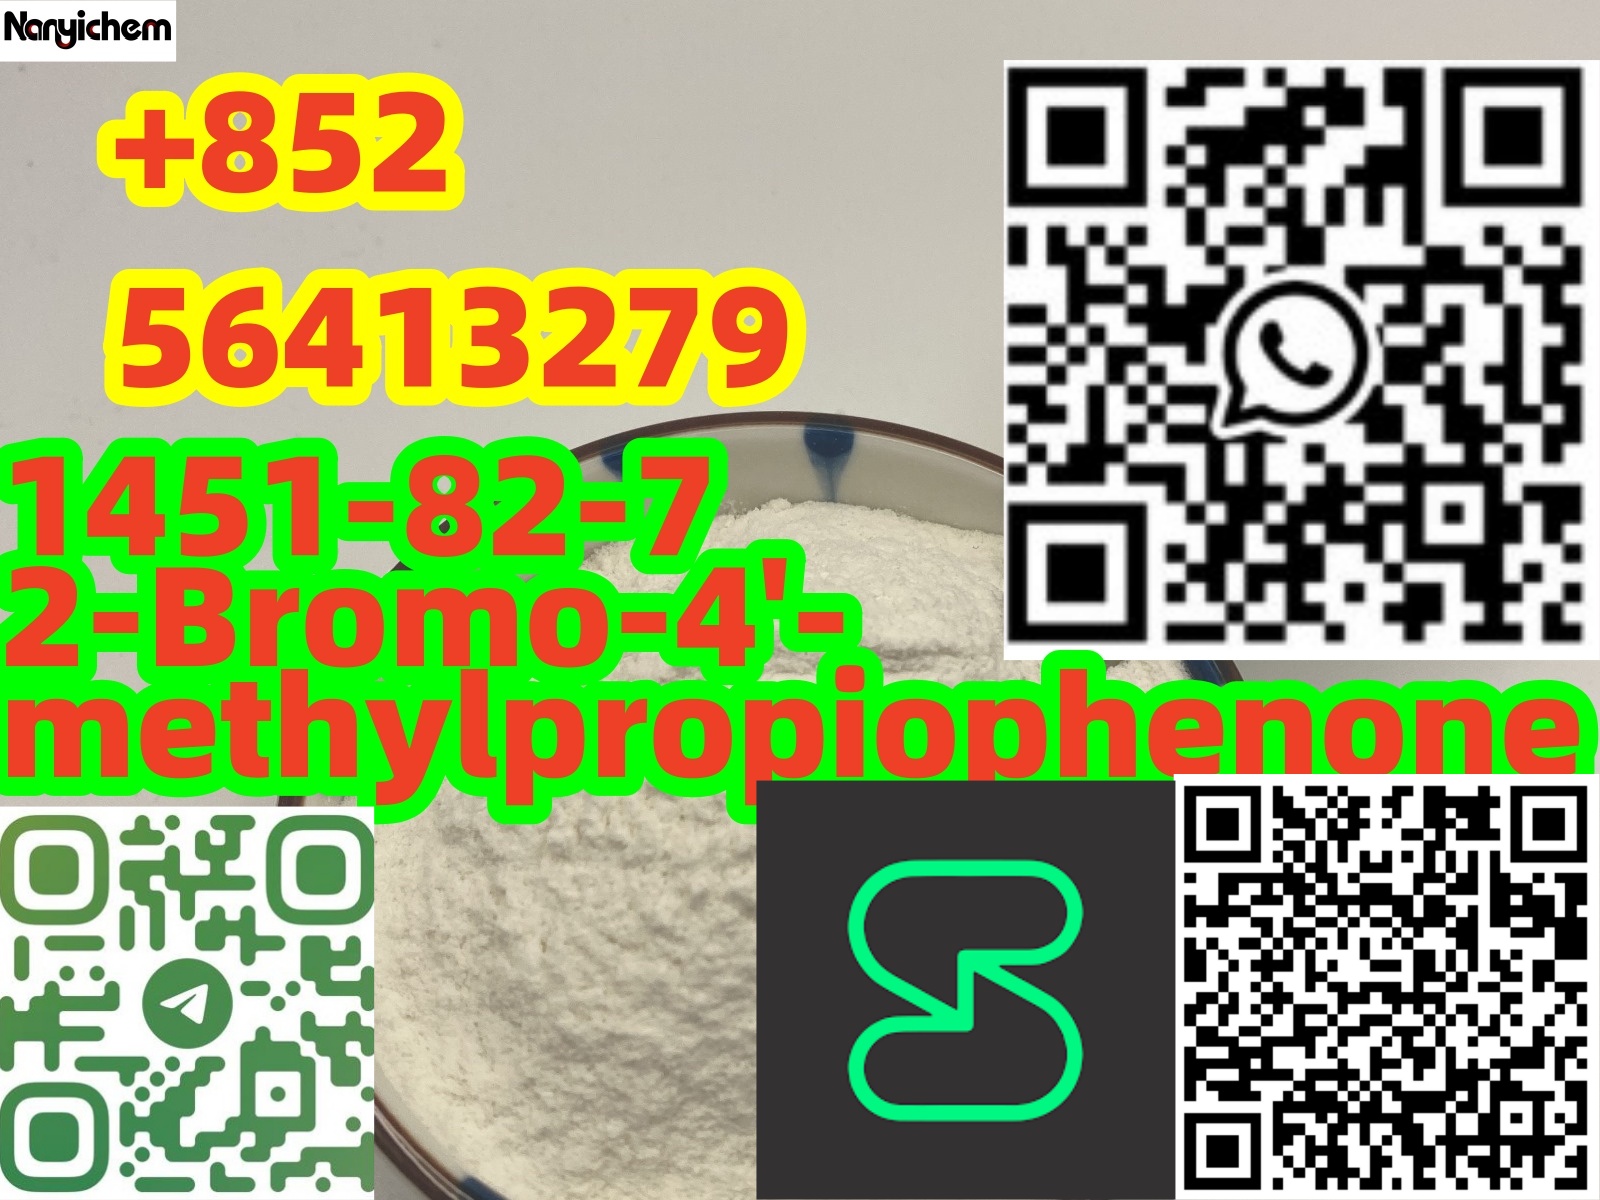 CAS : 1451-82-7    2-Bromo-4'-methylpropiophenone   